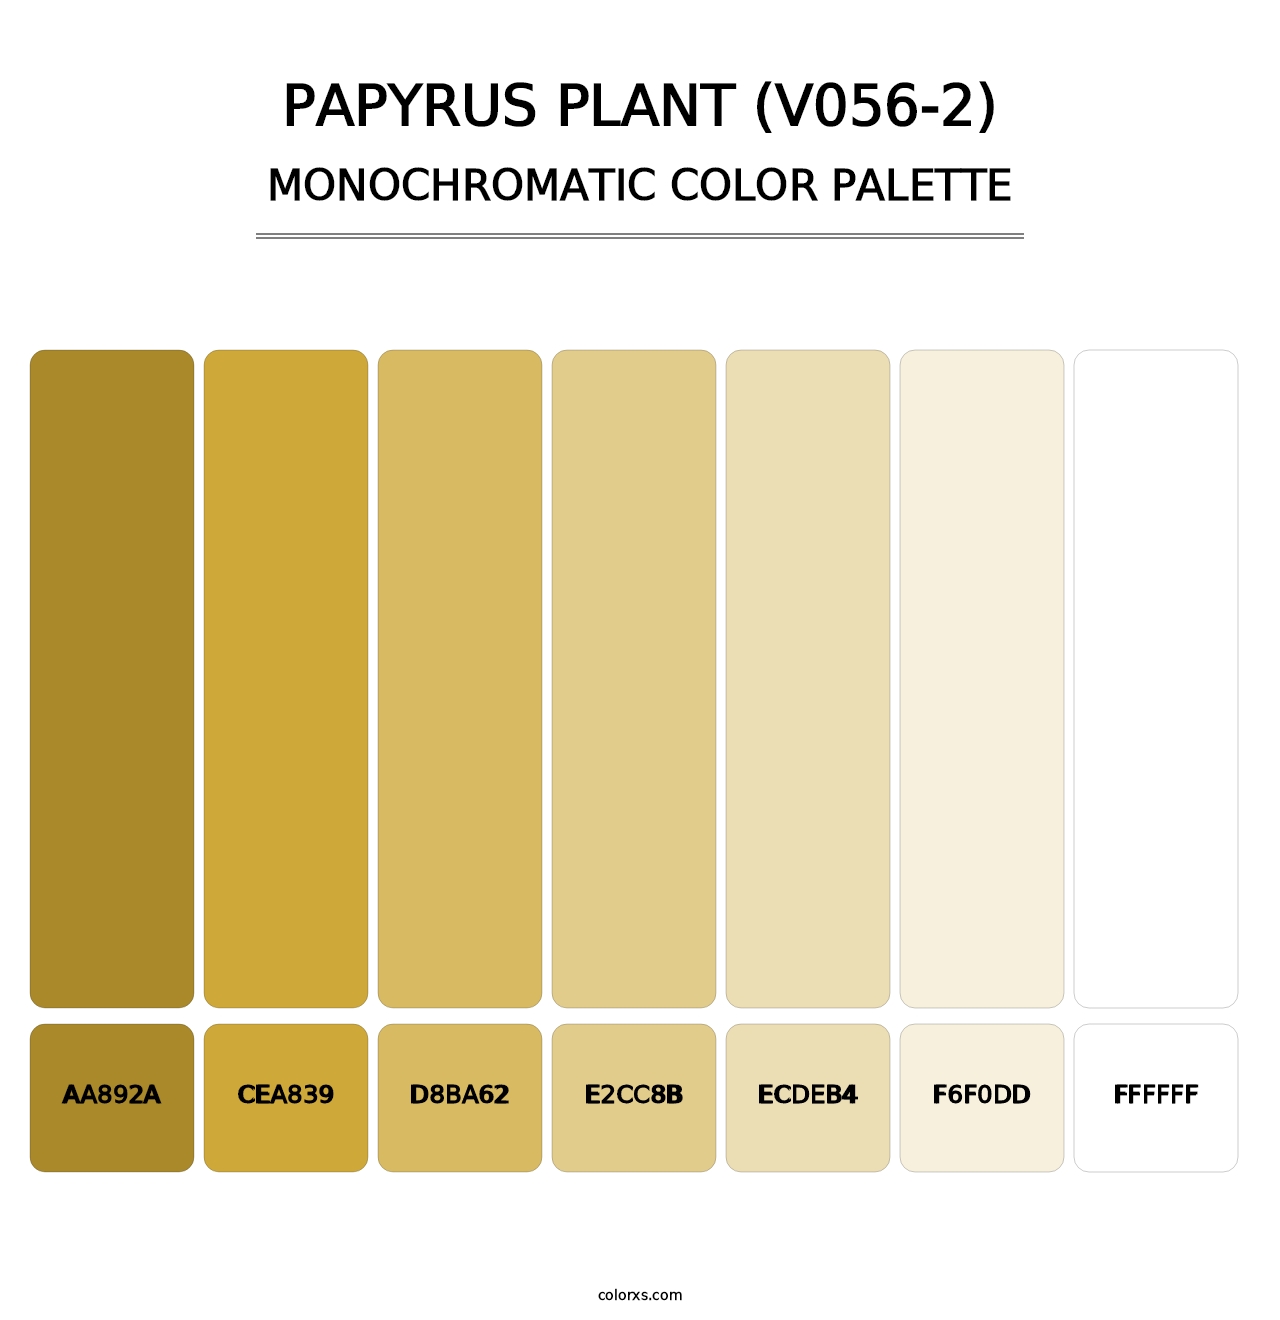 Papyrus Plant (V056-2) - Monochromatic Color Palette